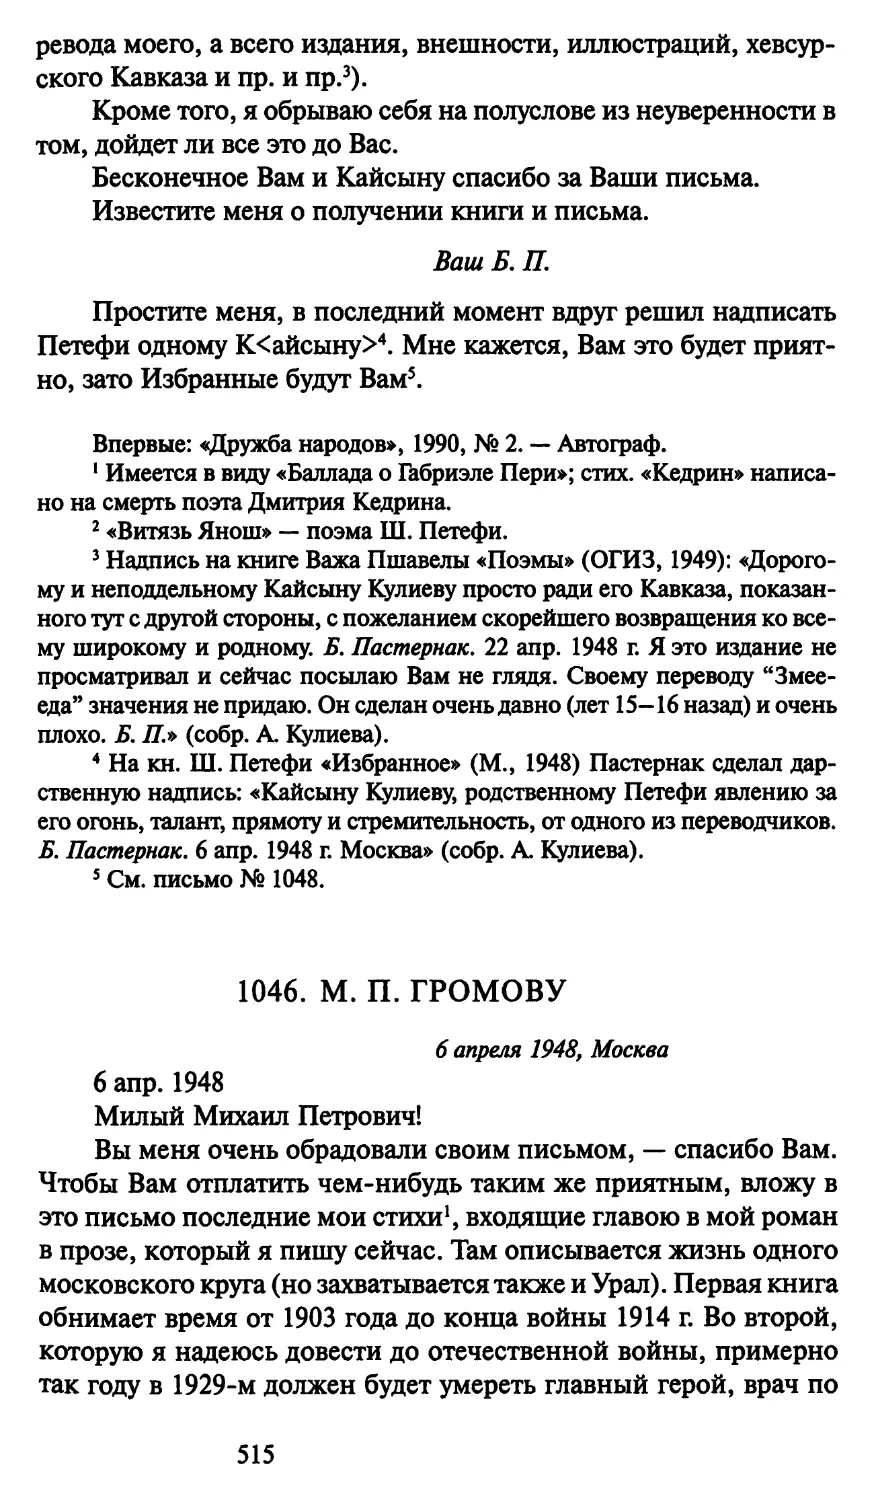 1046. М. П. Громову 6 апреля 1948